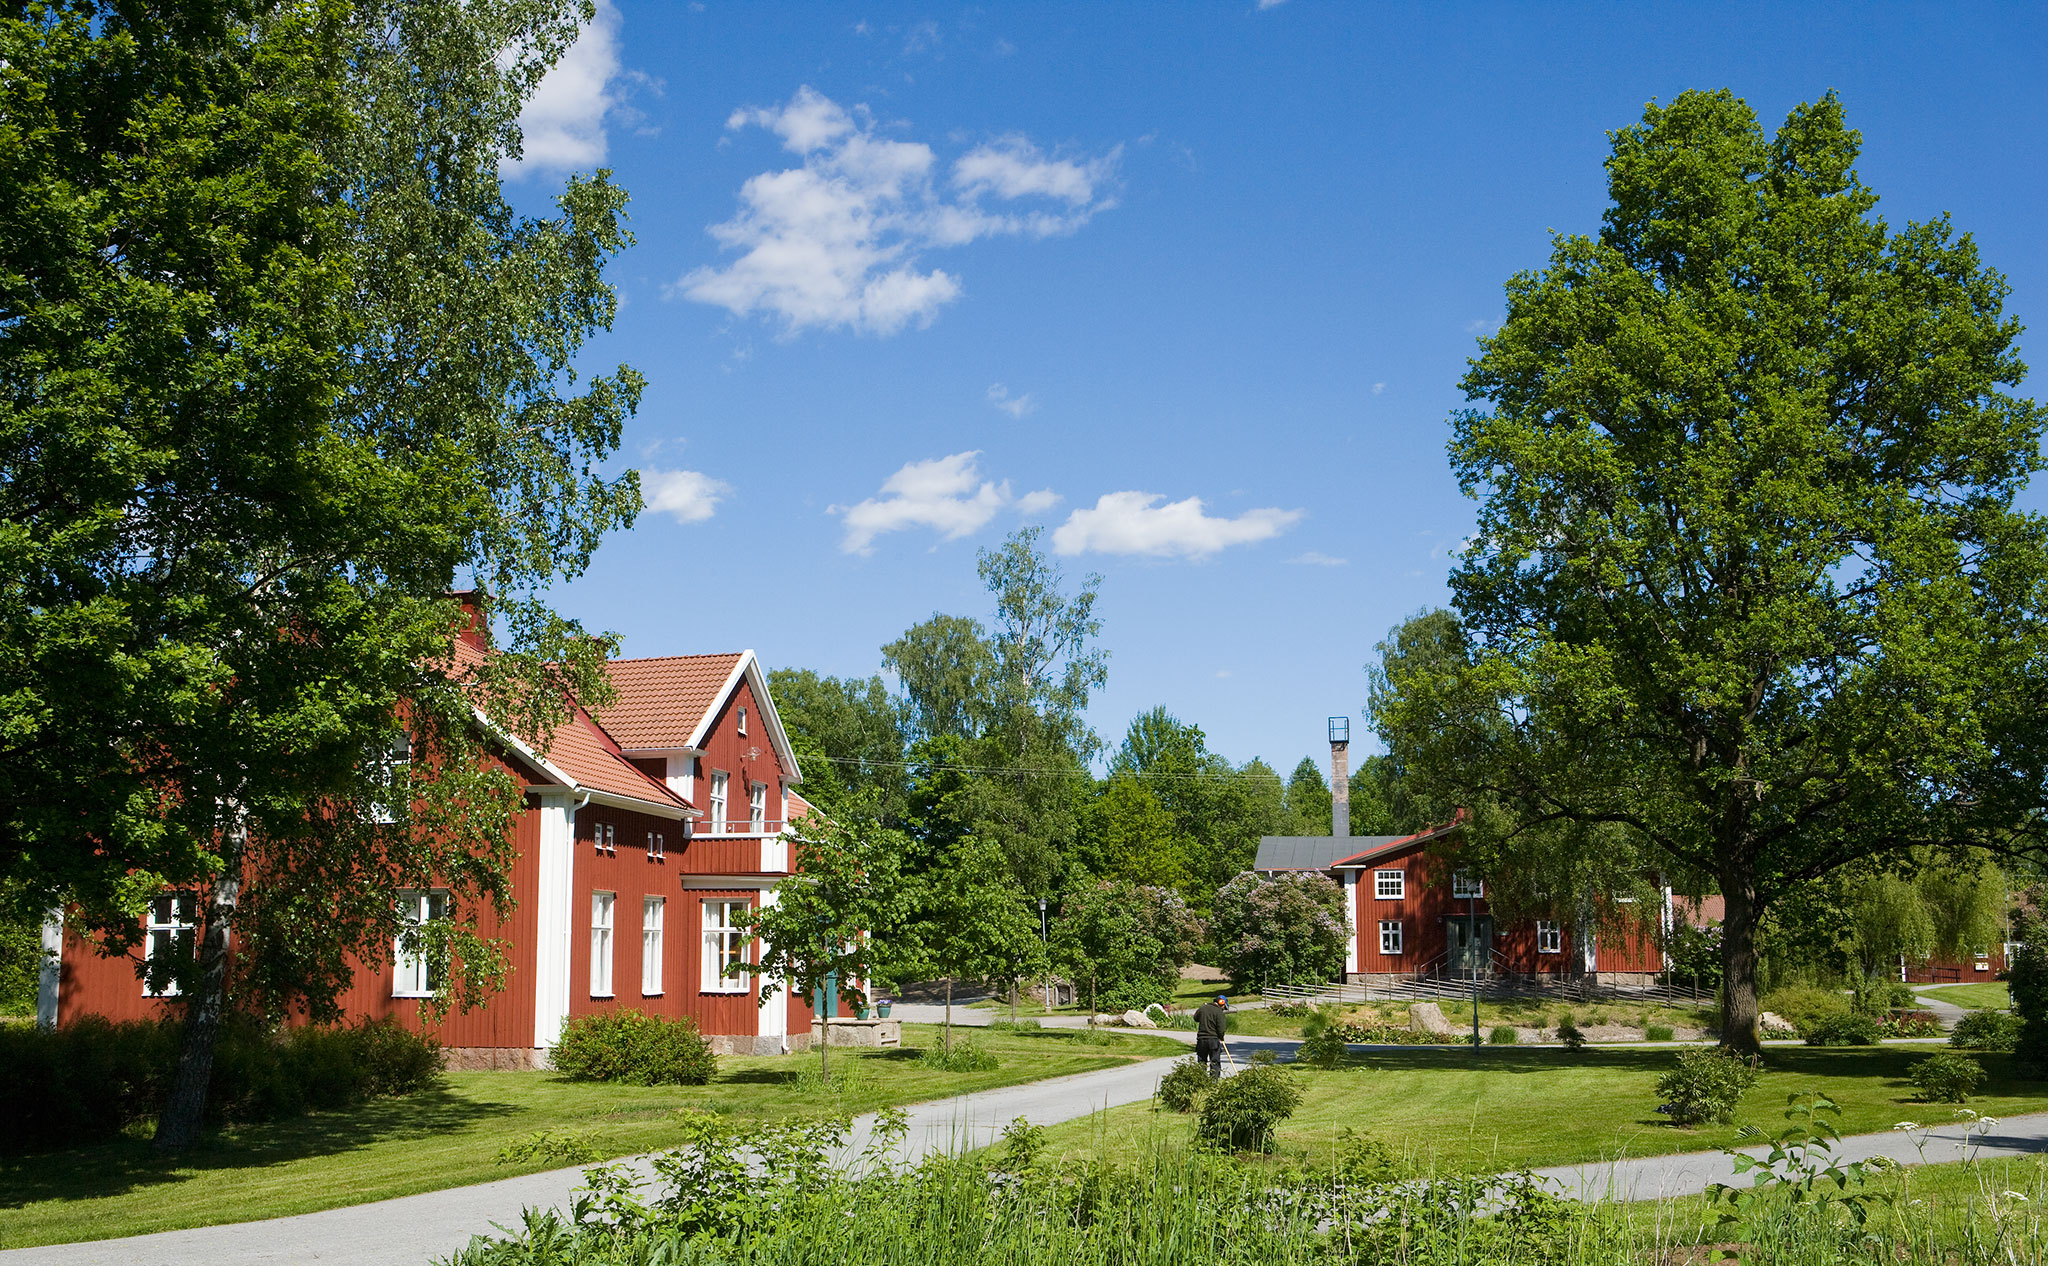 Miljöbild Kävesta - Hantverkshuset omgivet av sommargröna träd och gräsmattor